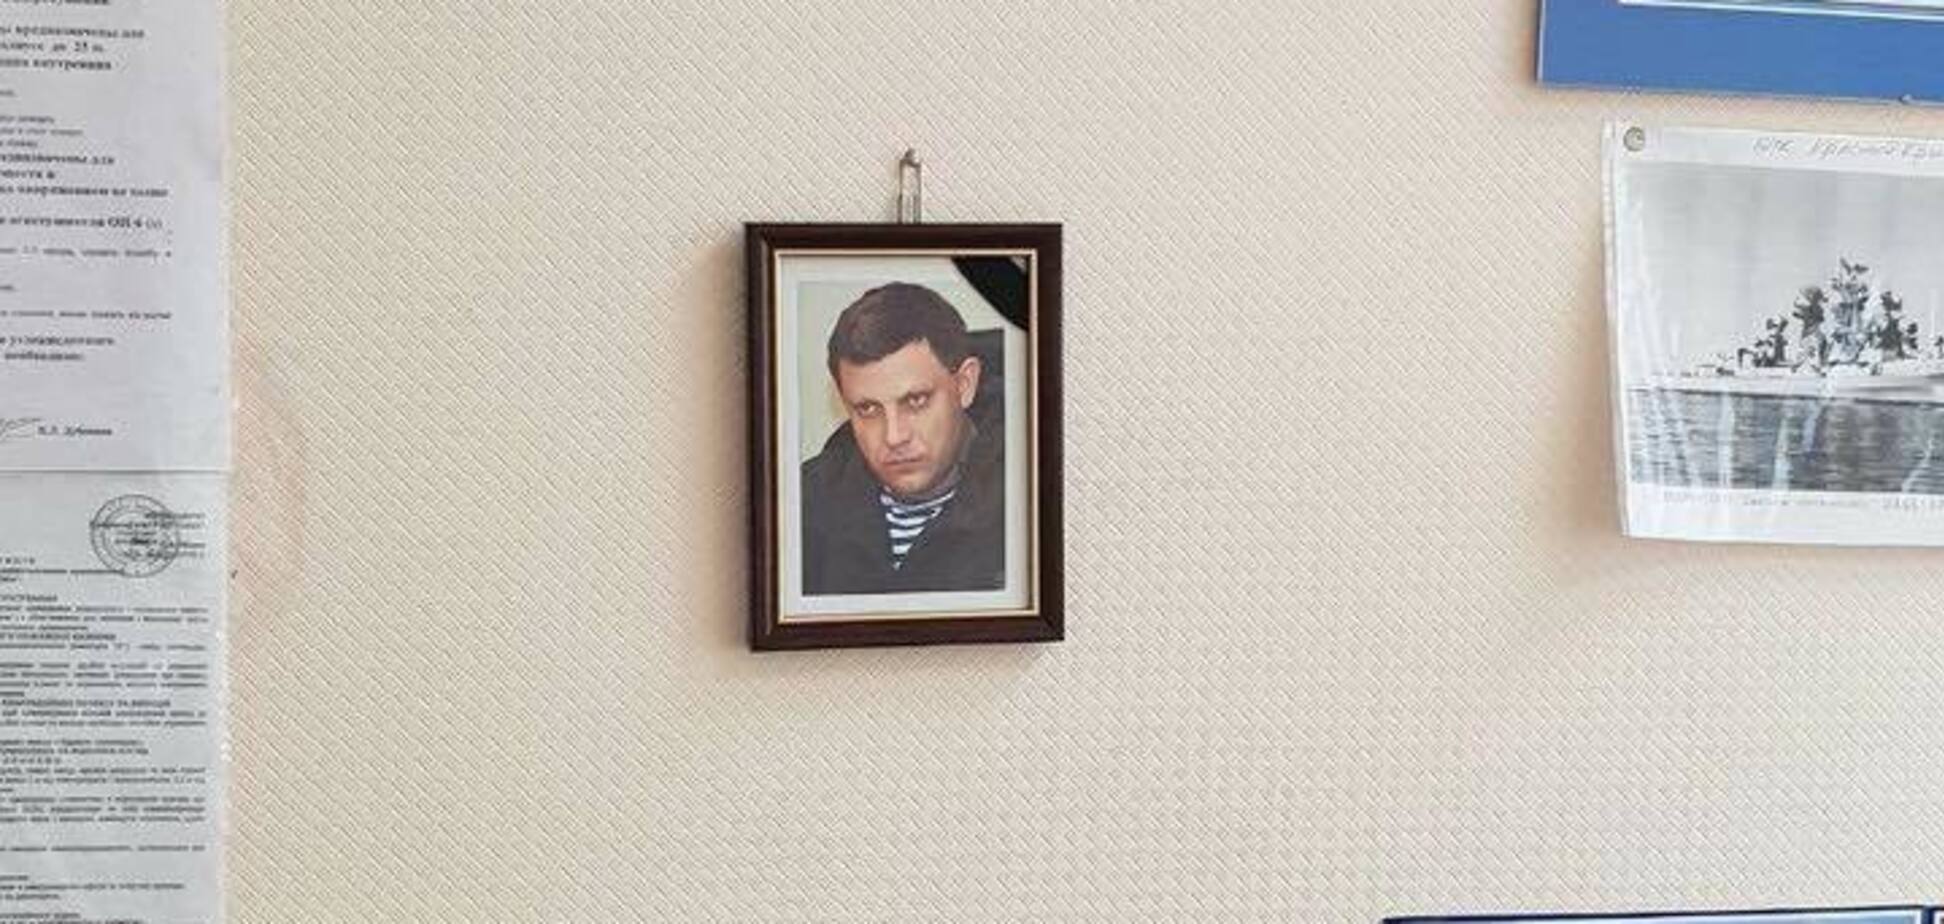 ''Де реакція СБУ?'' Університет Одеси потрапив у скандал через портрет Захарченка